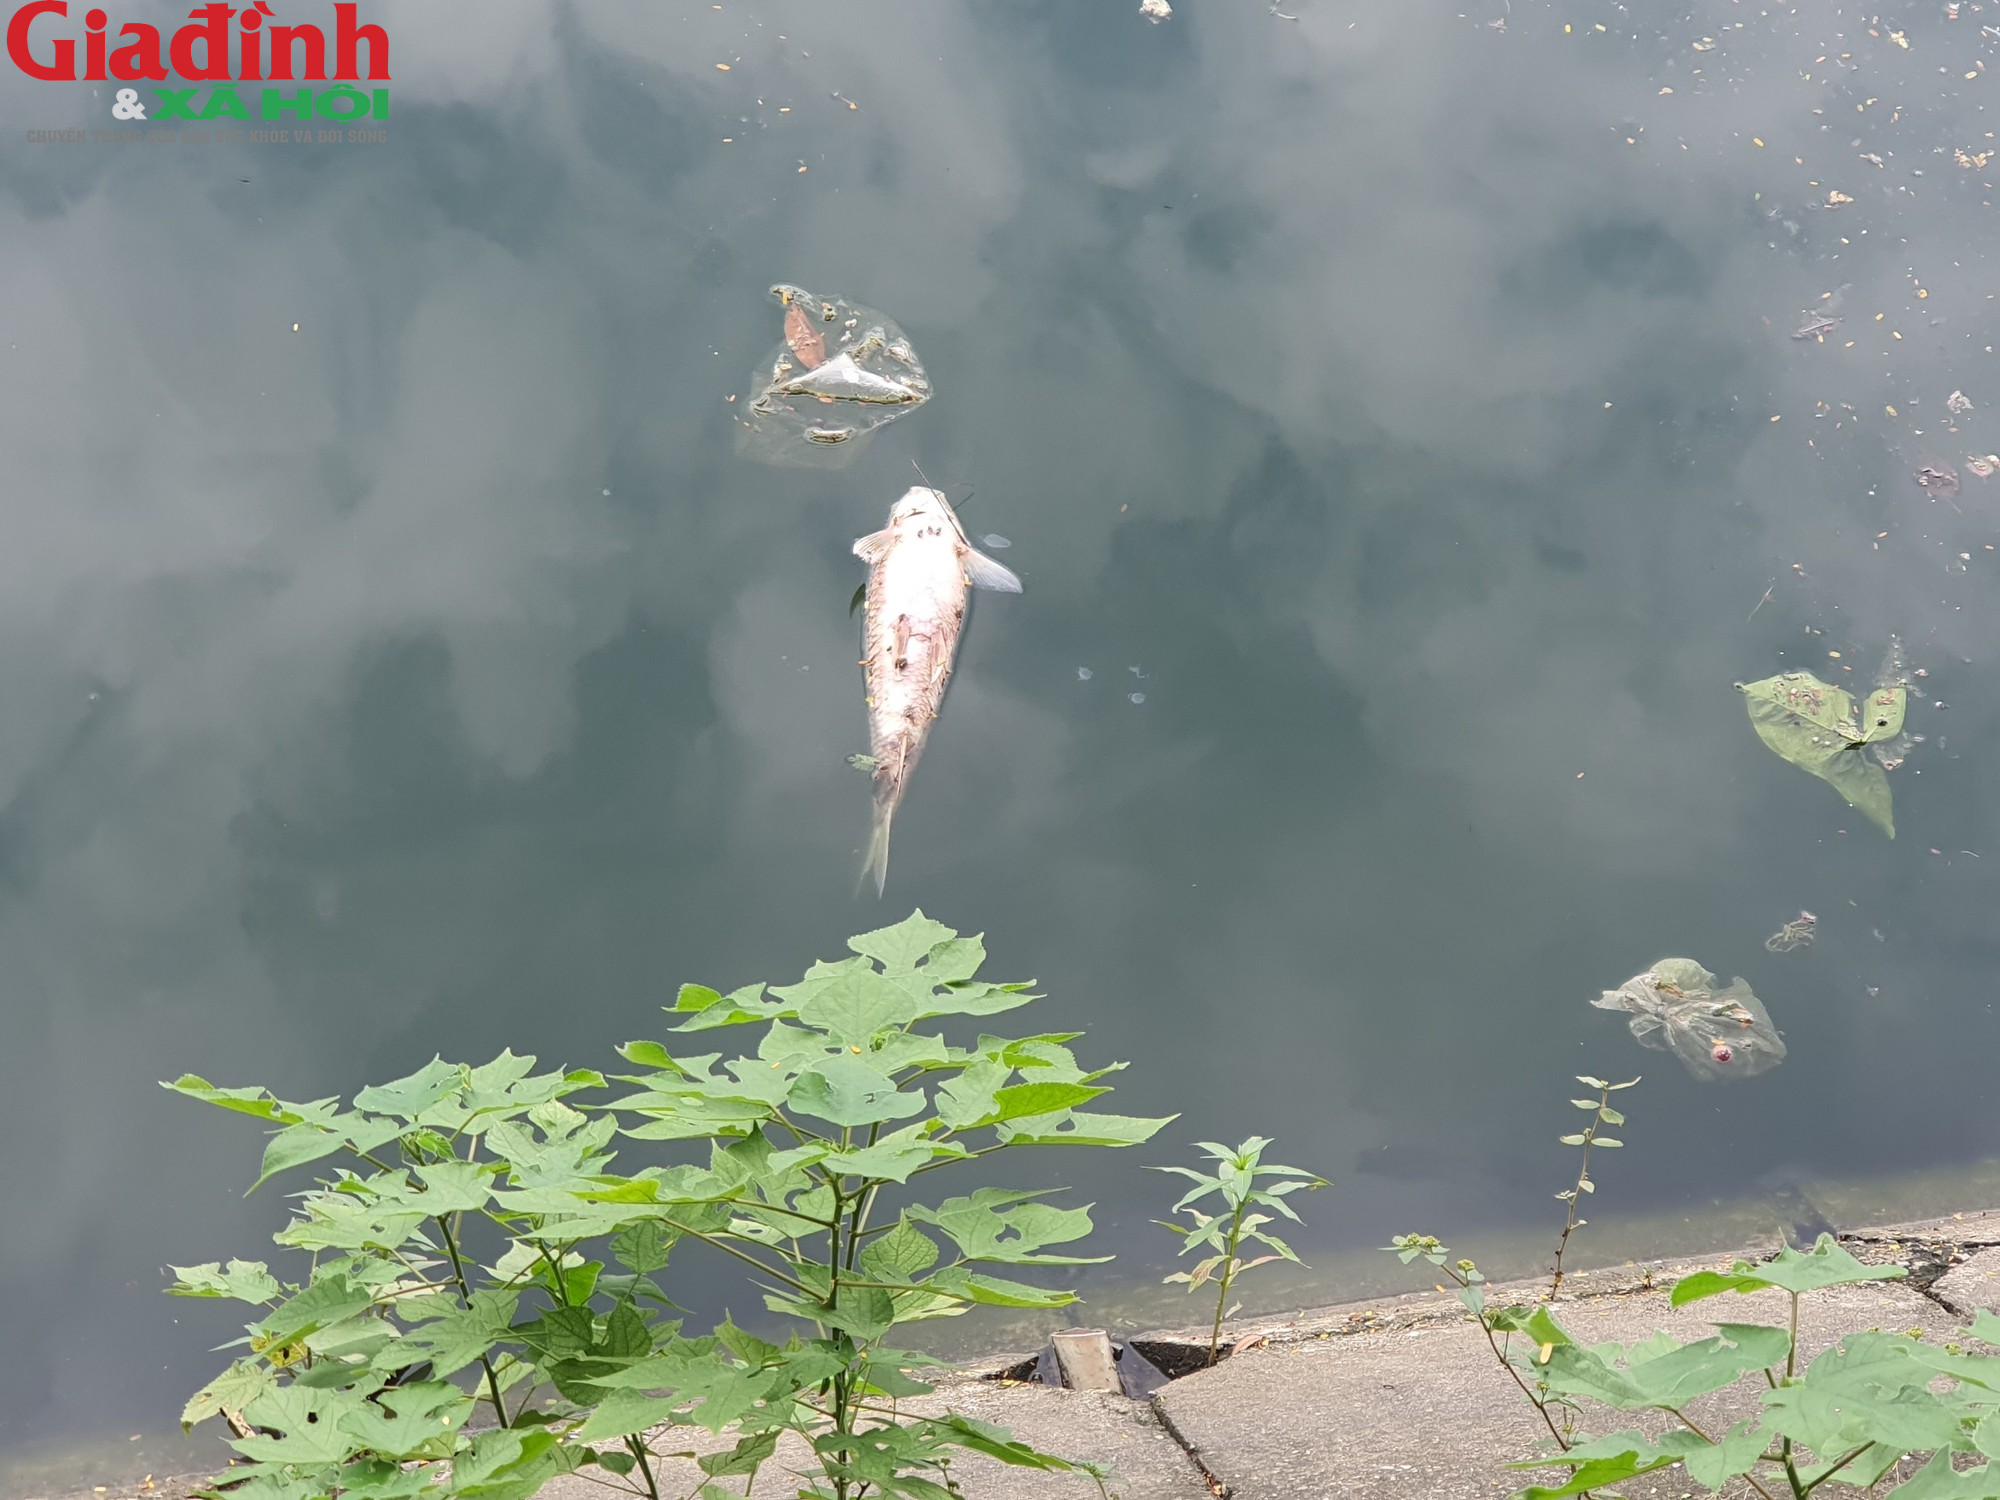 Nhiều hồ ở Hà Nội xuất hiện rác thải, xác cá chết trôi nổi gây ô nhiễm môi trường - Ảnh 5.